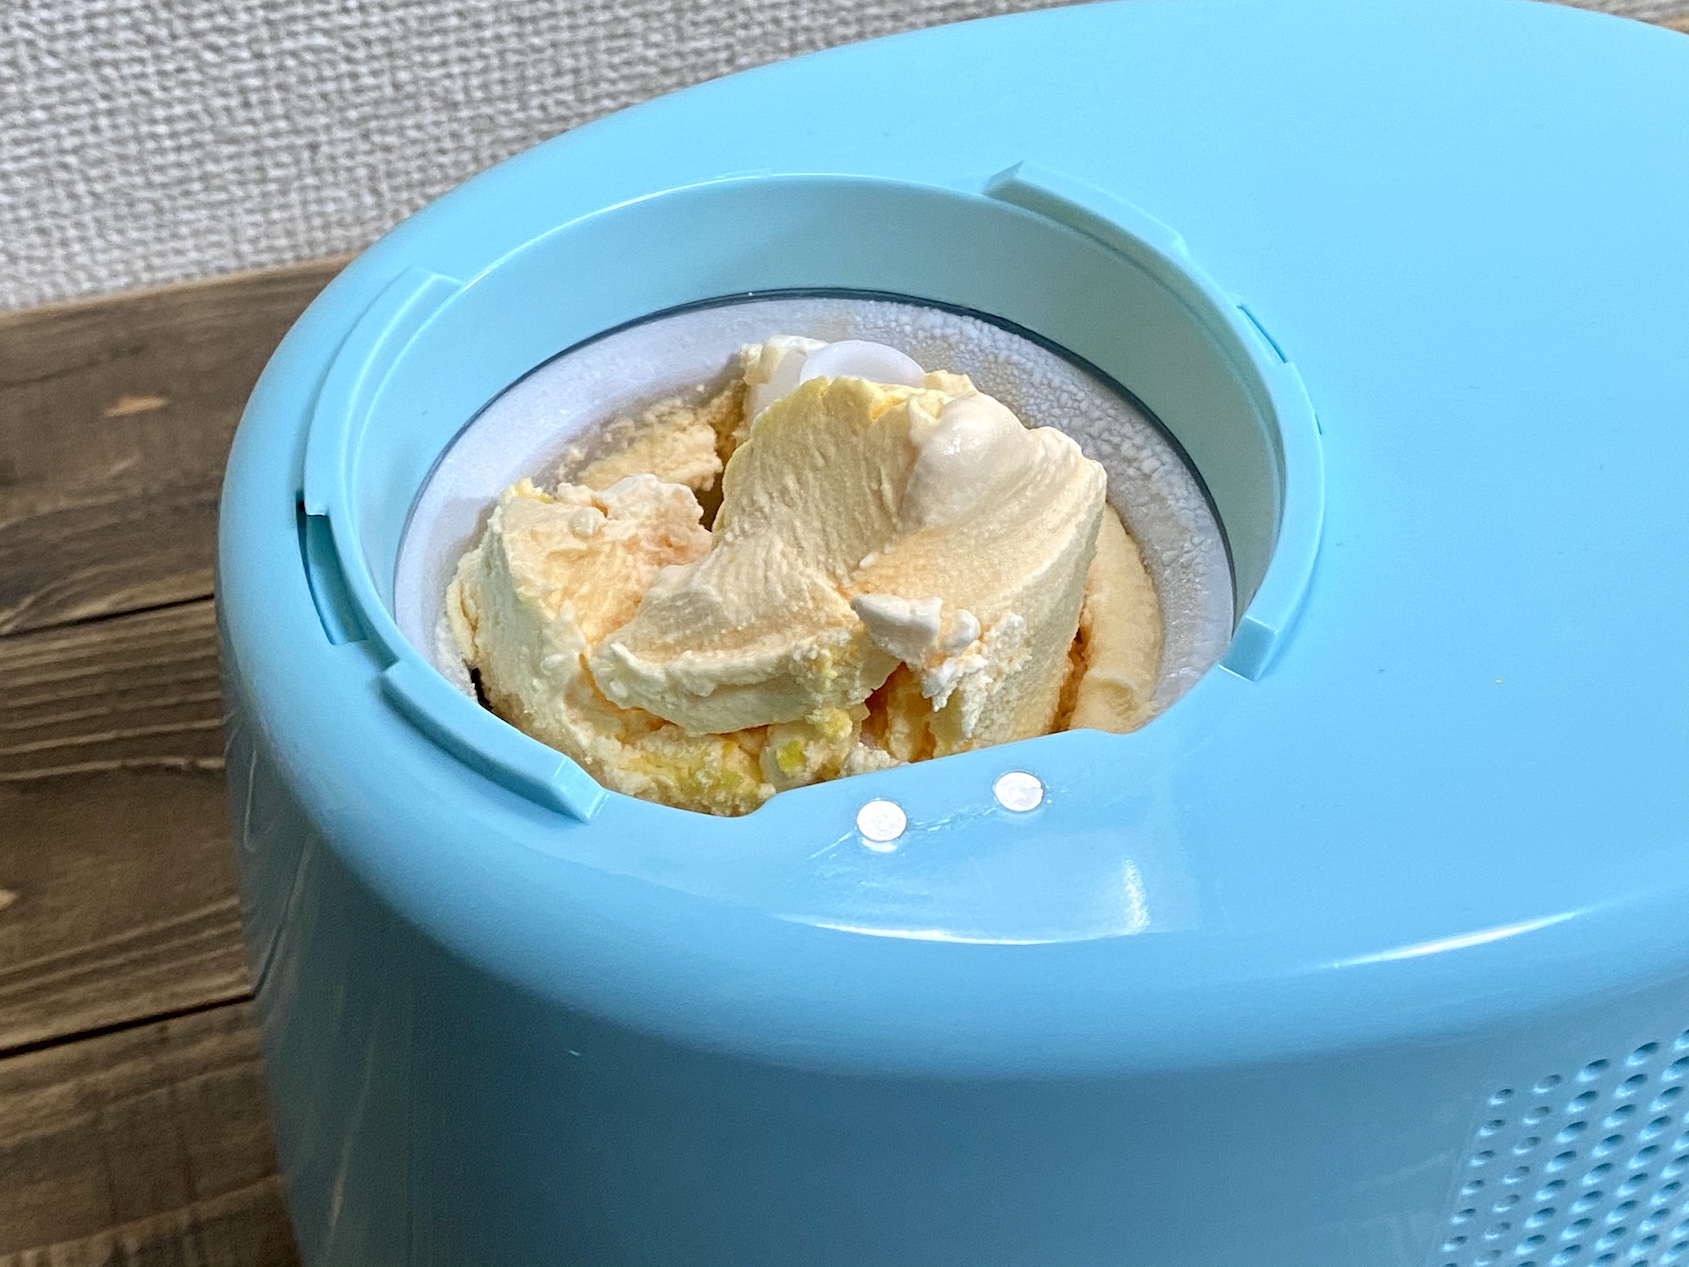 冷蔵庫不要 全自動アイスクリームメーカーが便利過ぎた Engadget 日本版